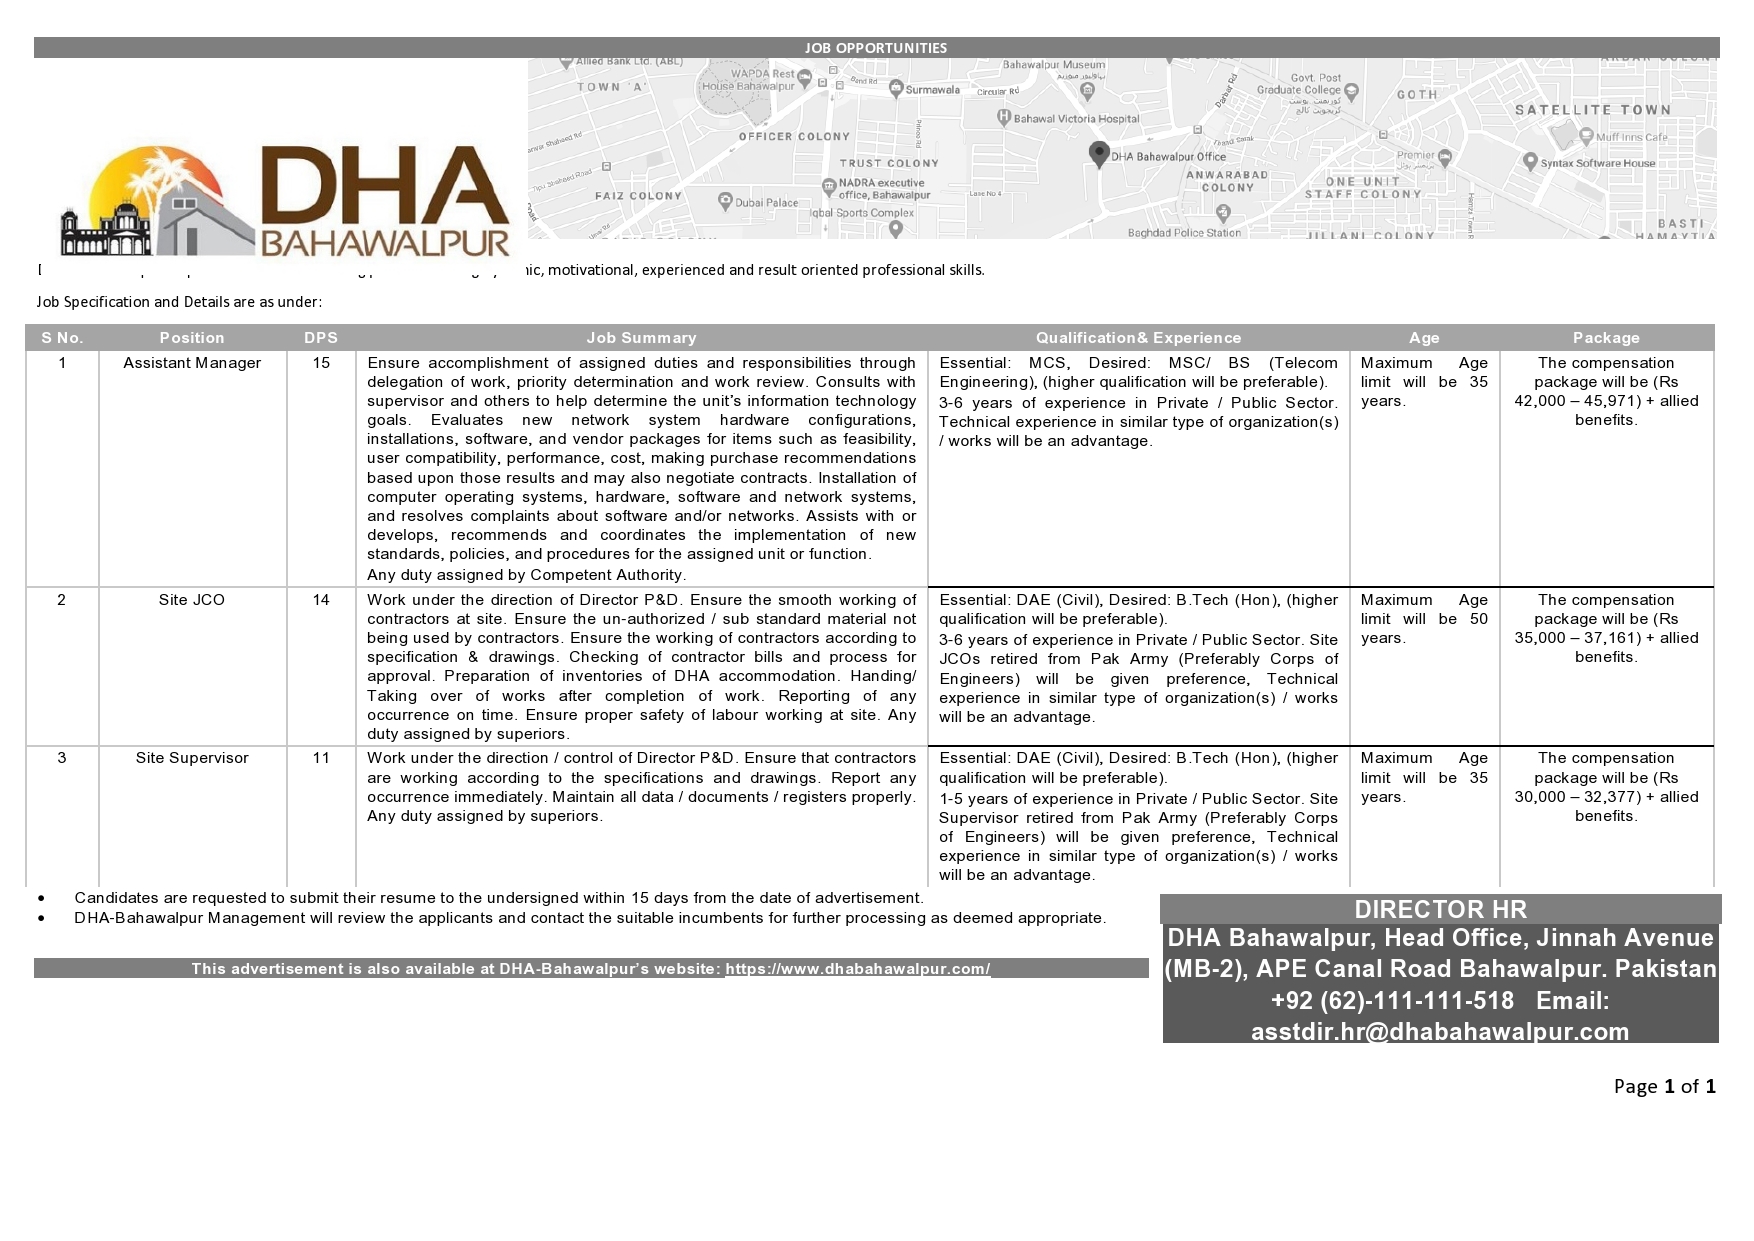 Defence Housing Authority DHA Bahawalpur Jobs 2021 Latest